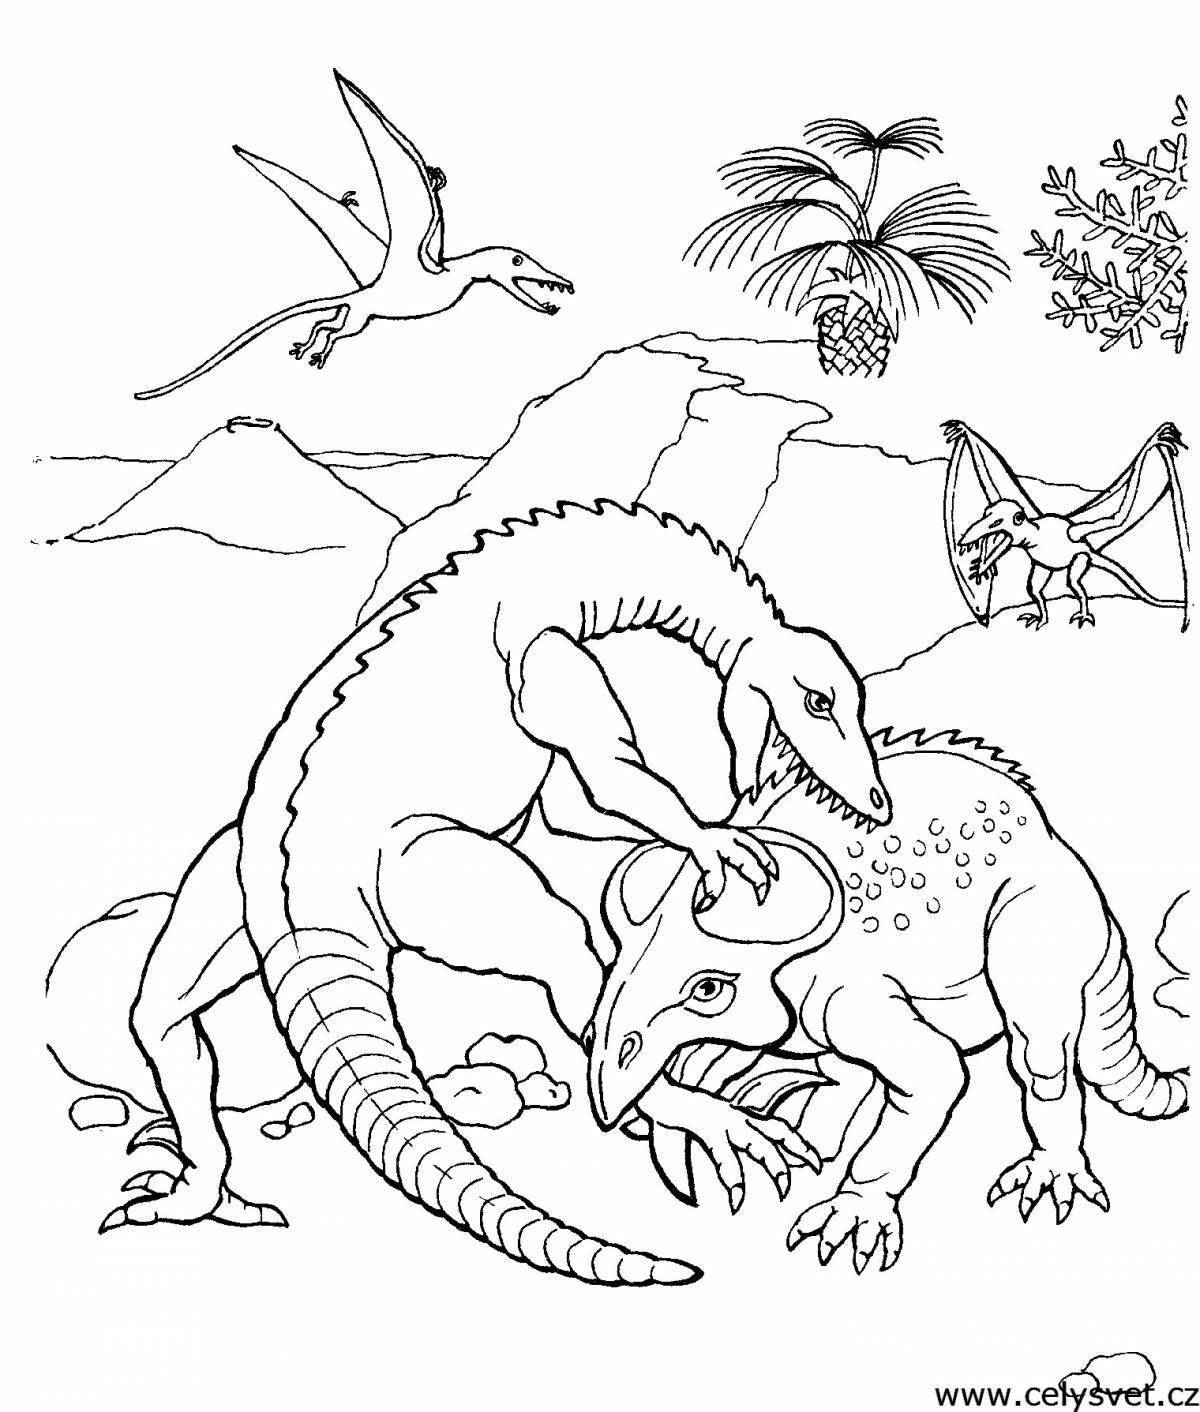 Раскраска динозавр формат а4. Динозавры / раскраска. Динозавр раскраска для детей. Раскраски для мальчиков динозавры. Динозаврики раскраска для детей.